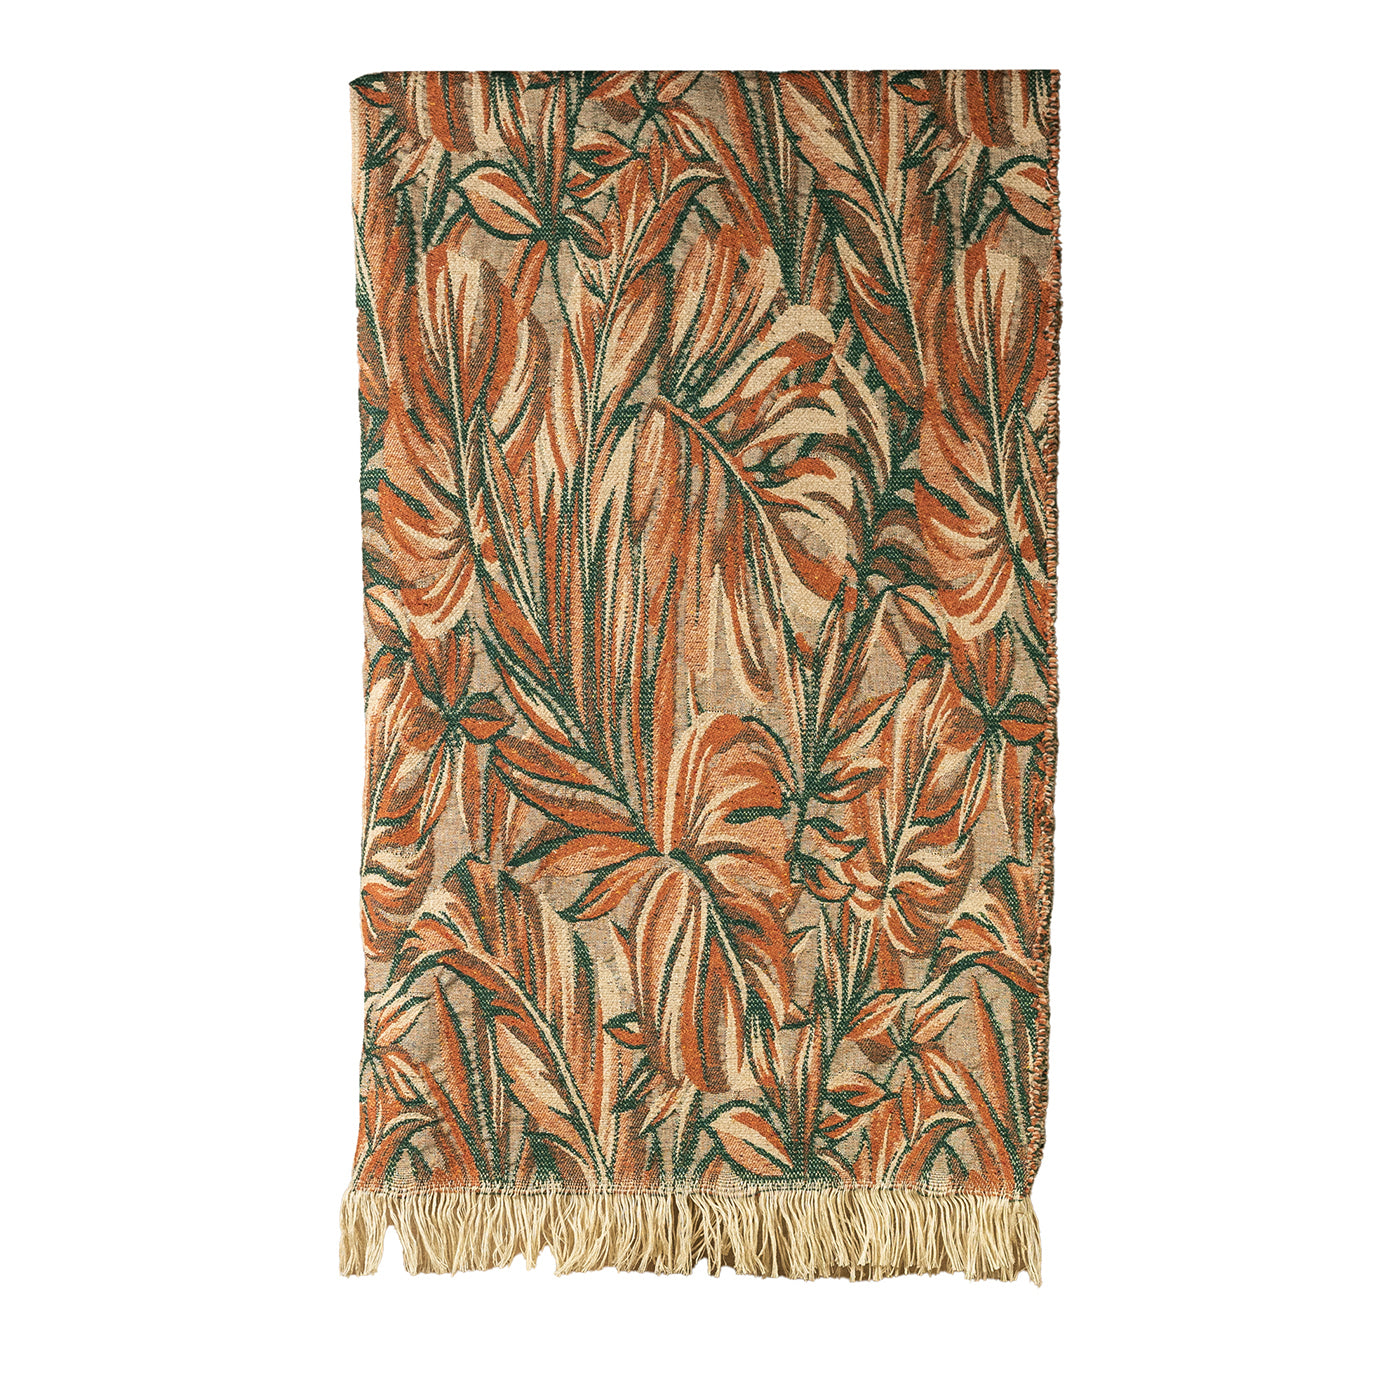 Nequizia Mehrfarbige Decke mit Fransen und botanischen Mustern - Hauptansicht